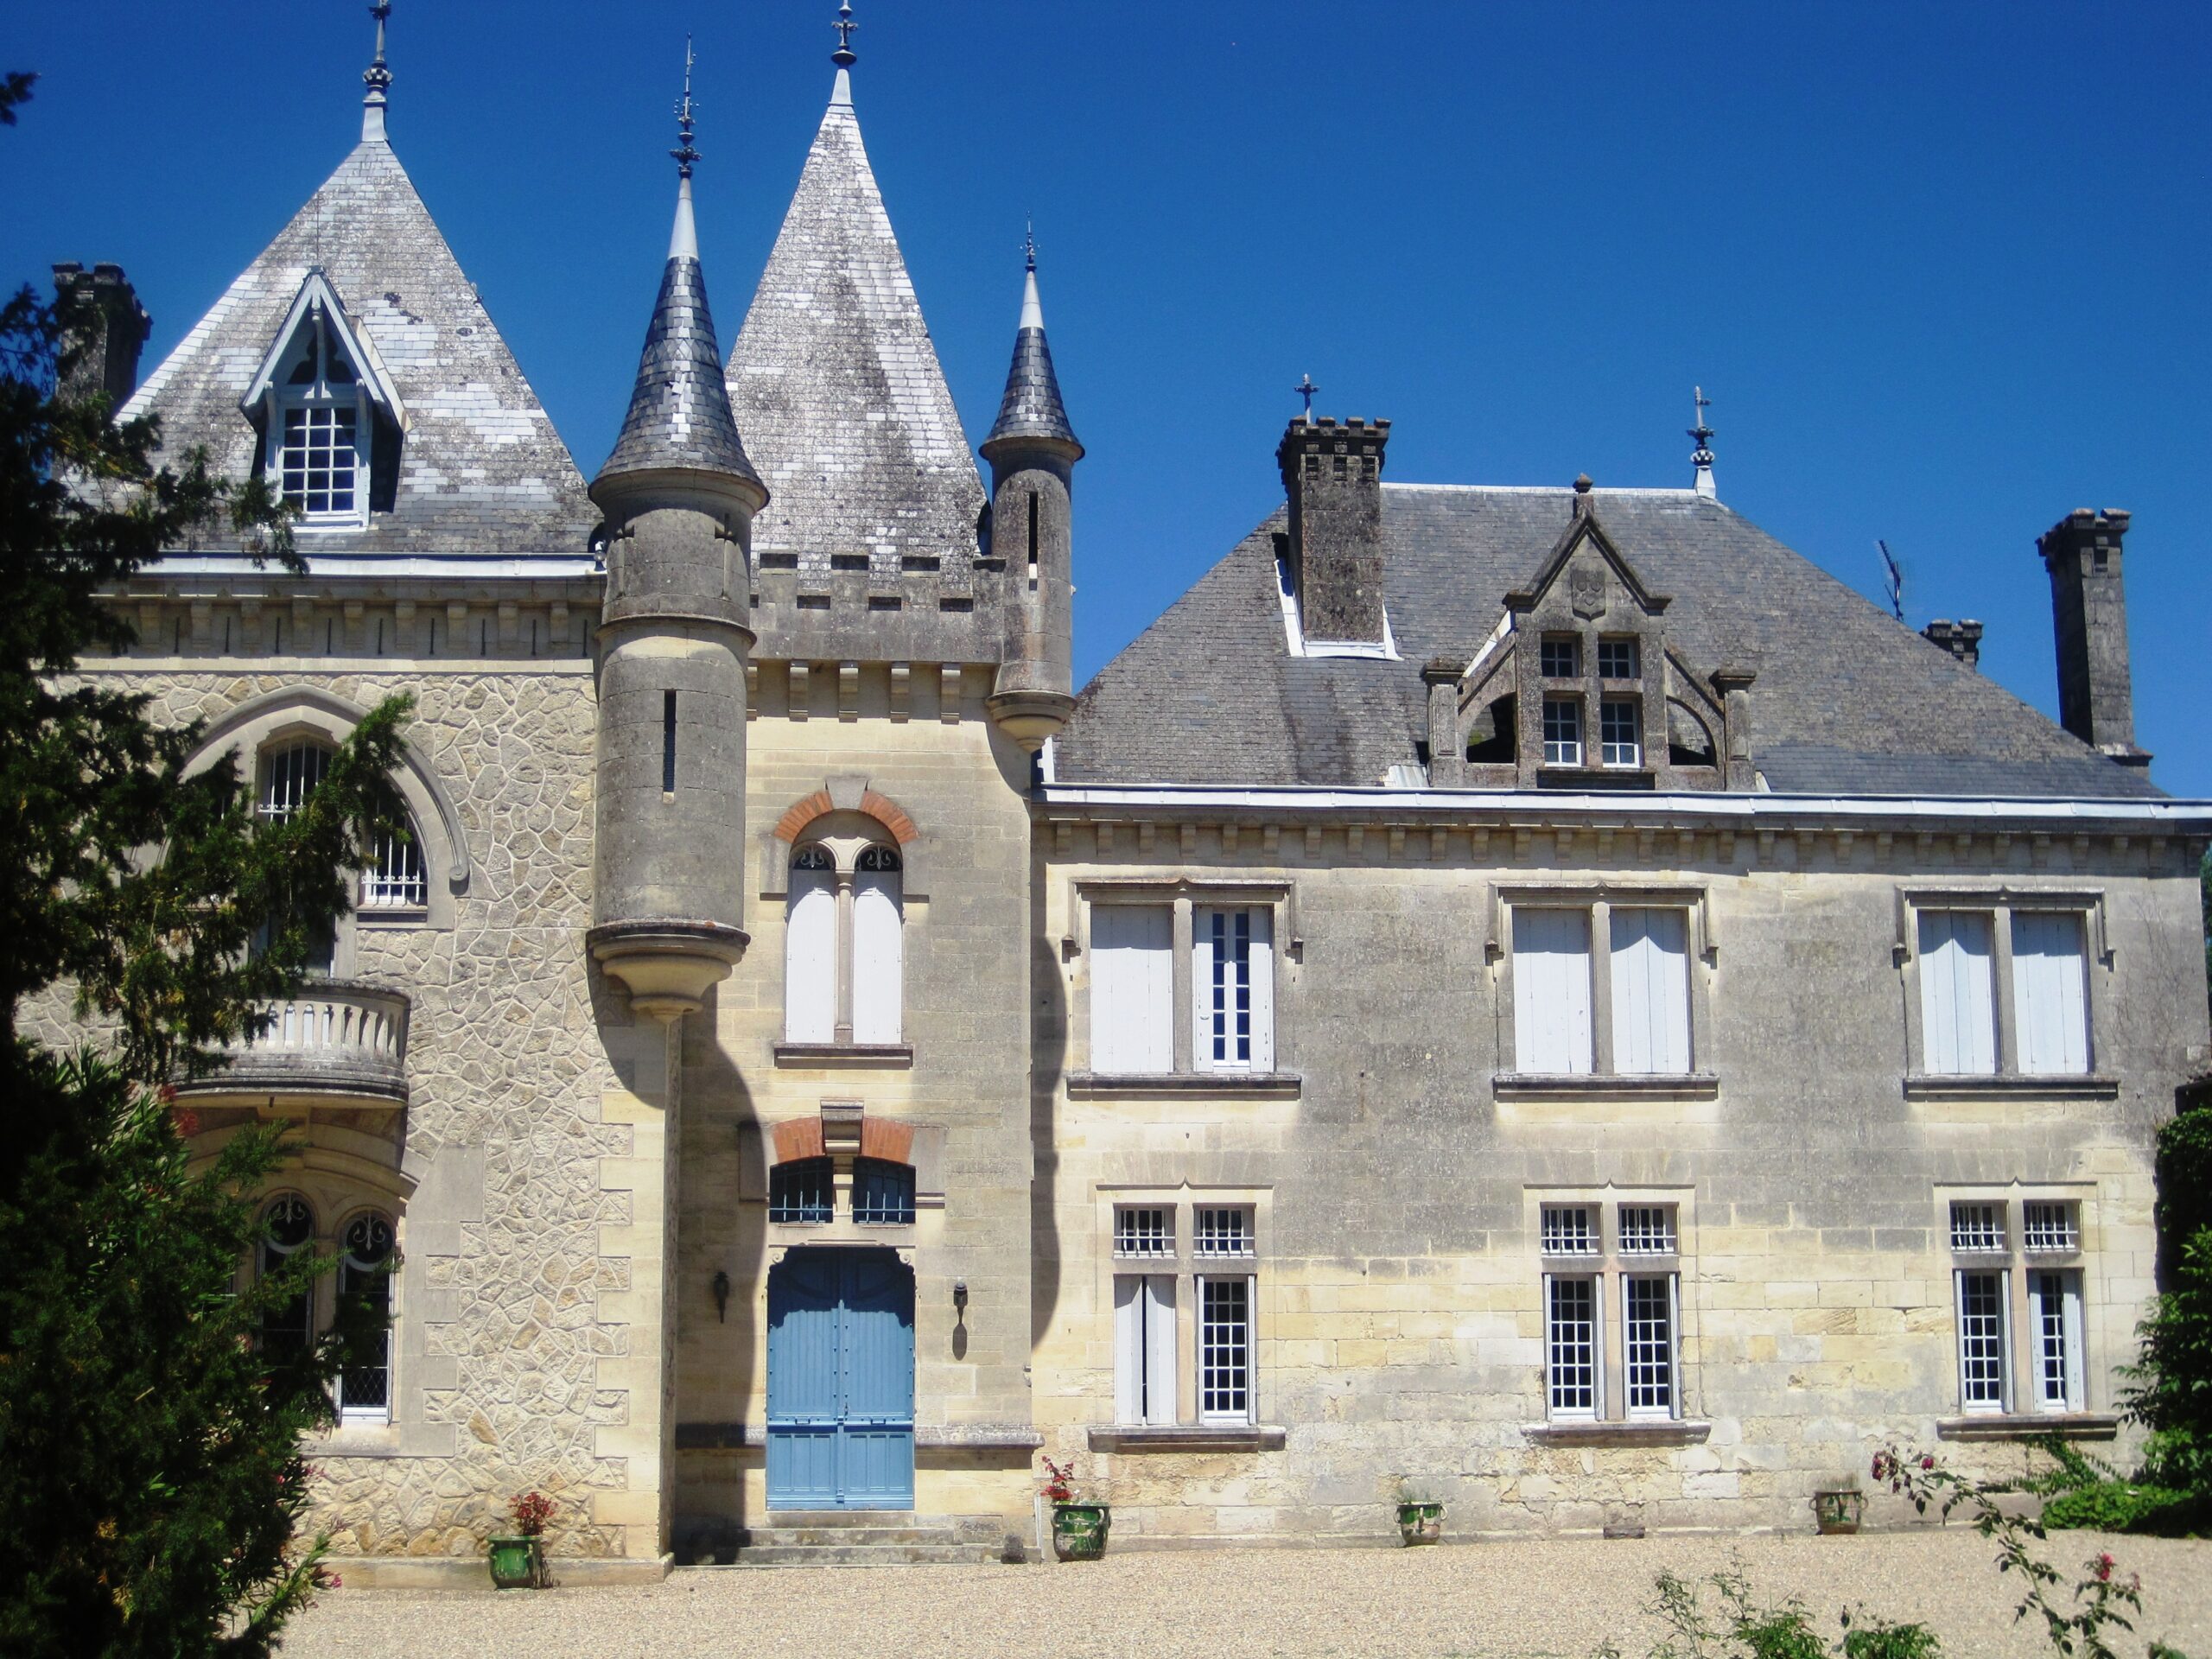 Chateau Cote de Baleau St. Emilion Bordeaux, Complete Guide